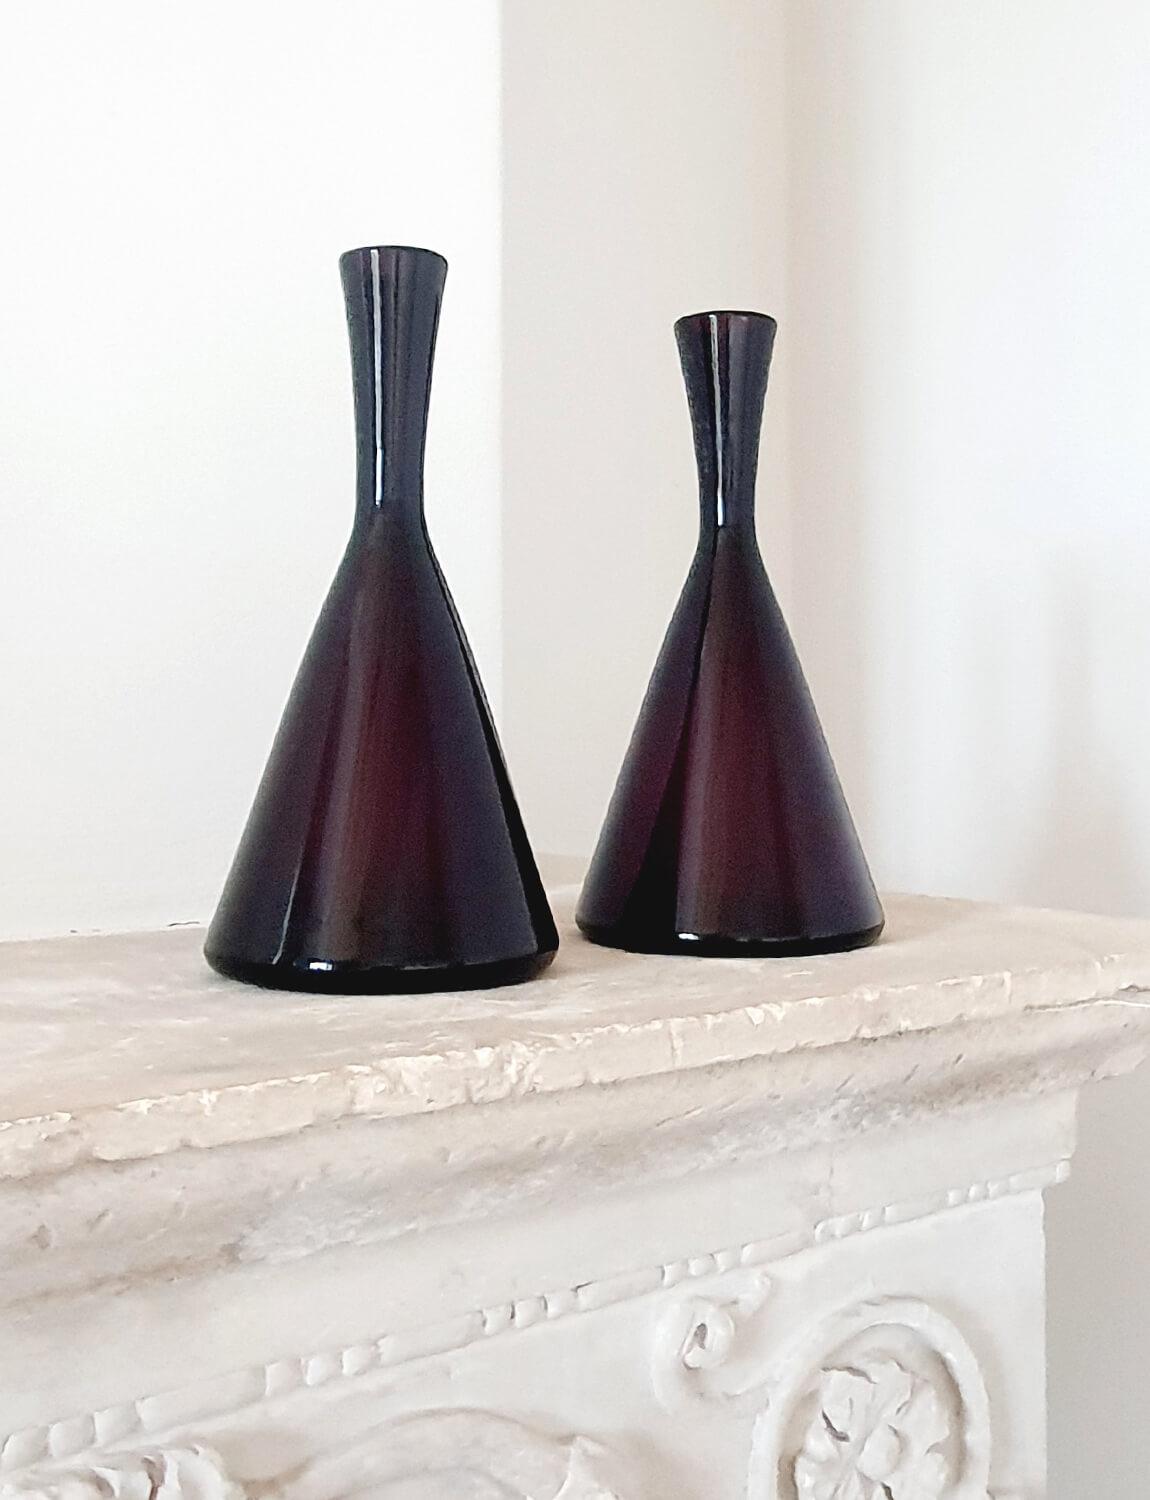 Paire de bouteilles de vin italiennes en verre Empoli soufflé à la main, de couleur canneberge (violet foncé). Ces bouteilles exceptionnelles ont été soufflées à la main à Empoli dans les années 1950. Au siècle dernier, Empoli, en Toscane, était,